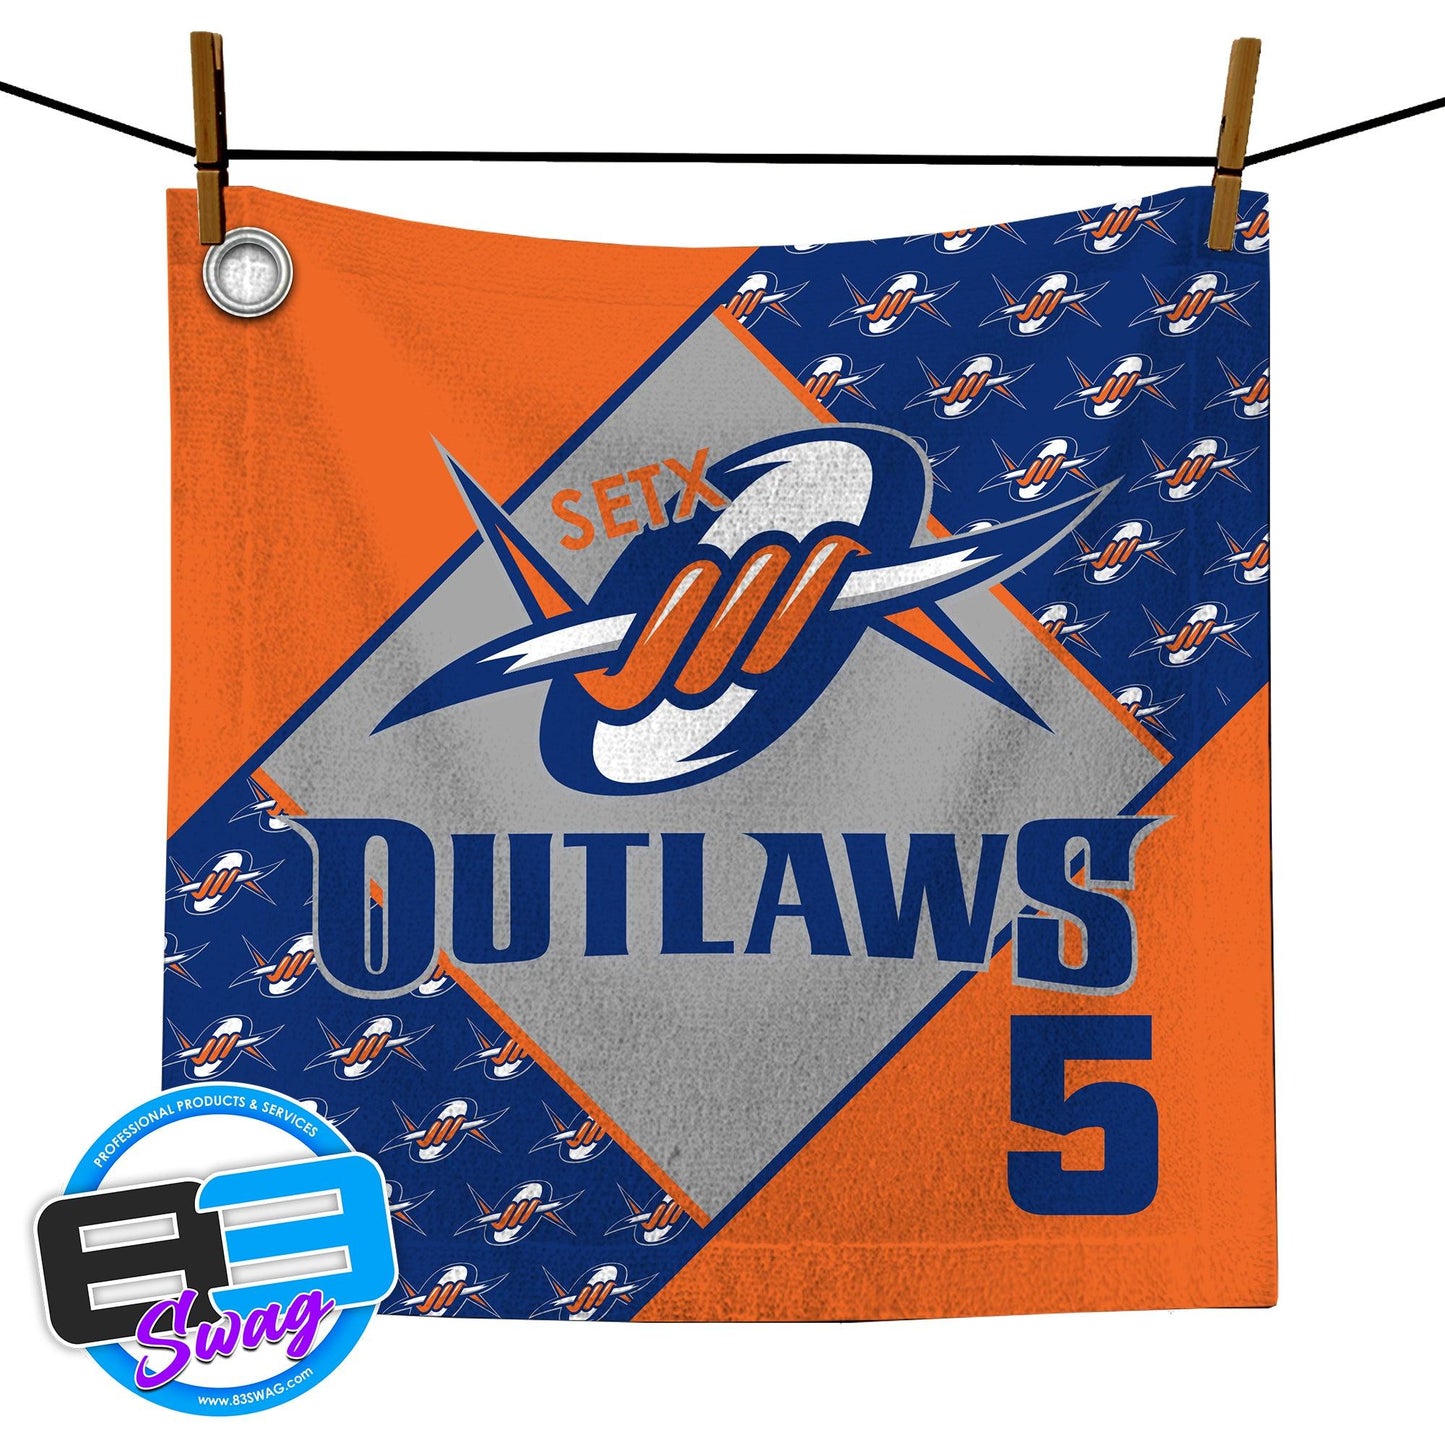 14"x14" Rally Towel - SETX Outlaws - 83Swag